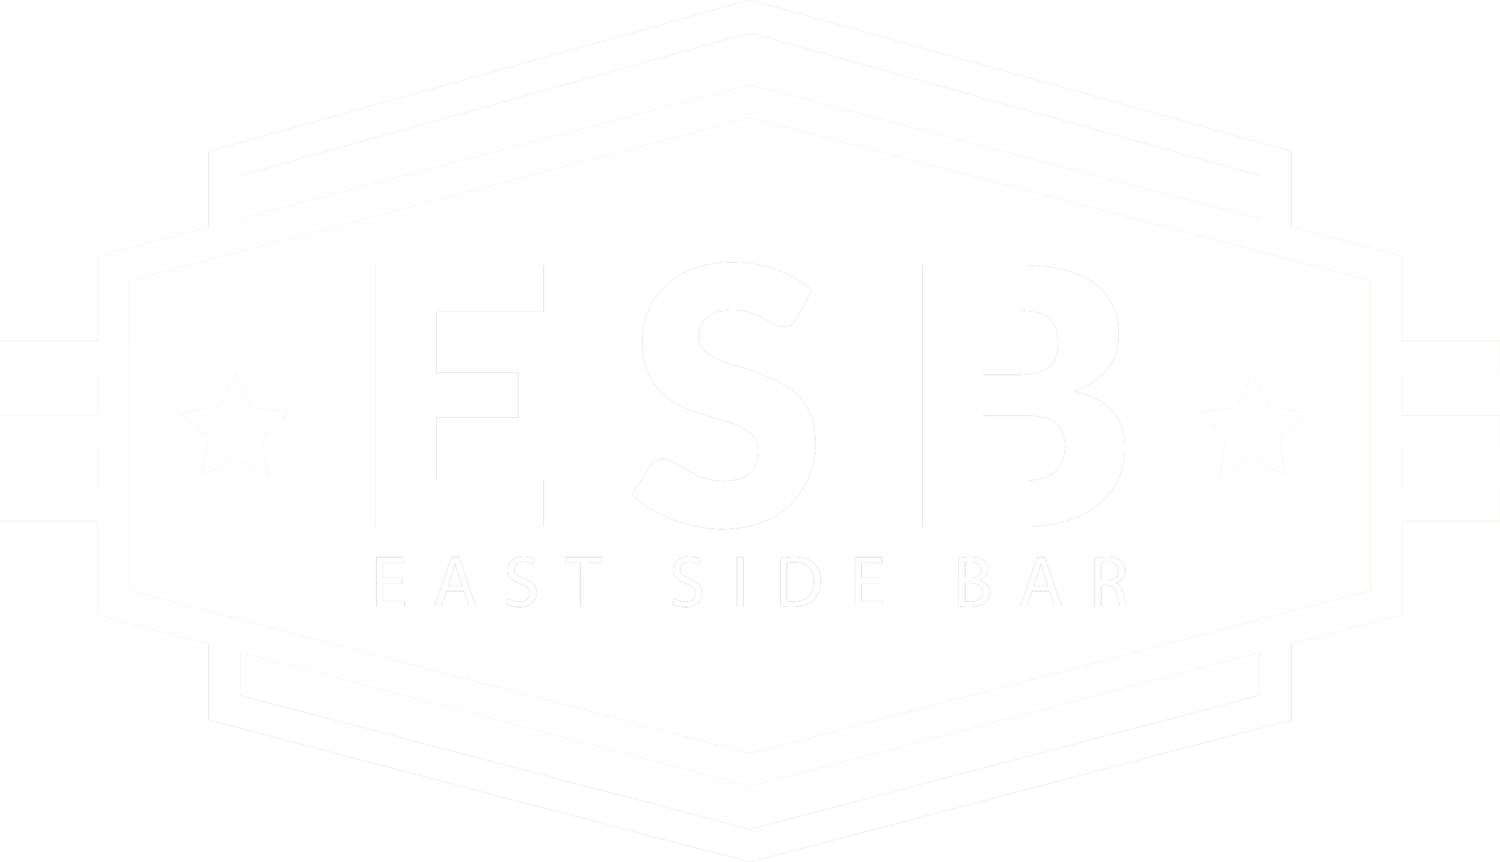 ESB | EAST SIDE BAR